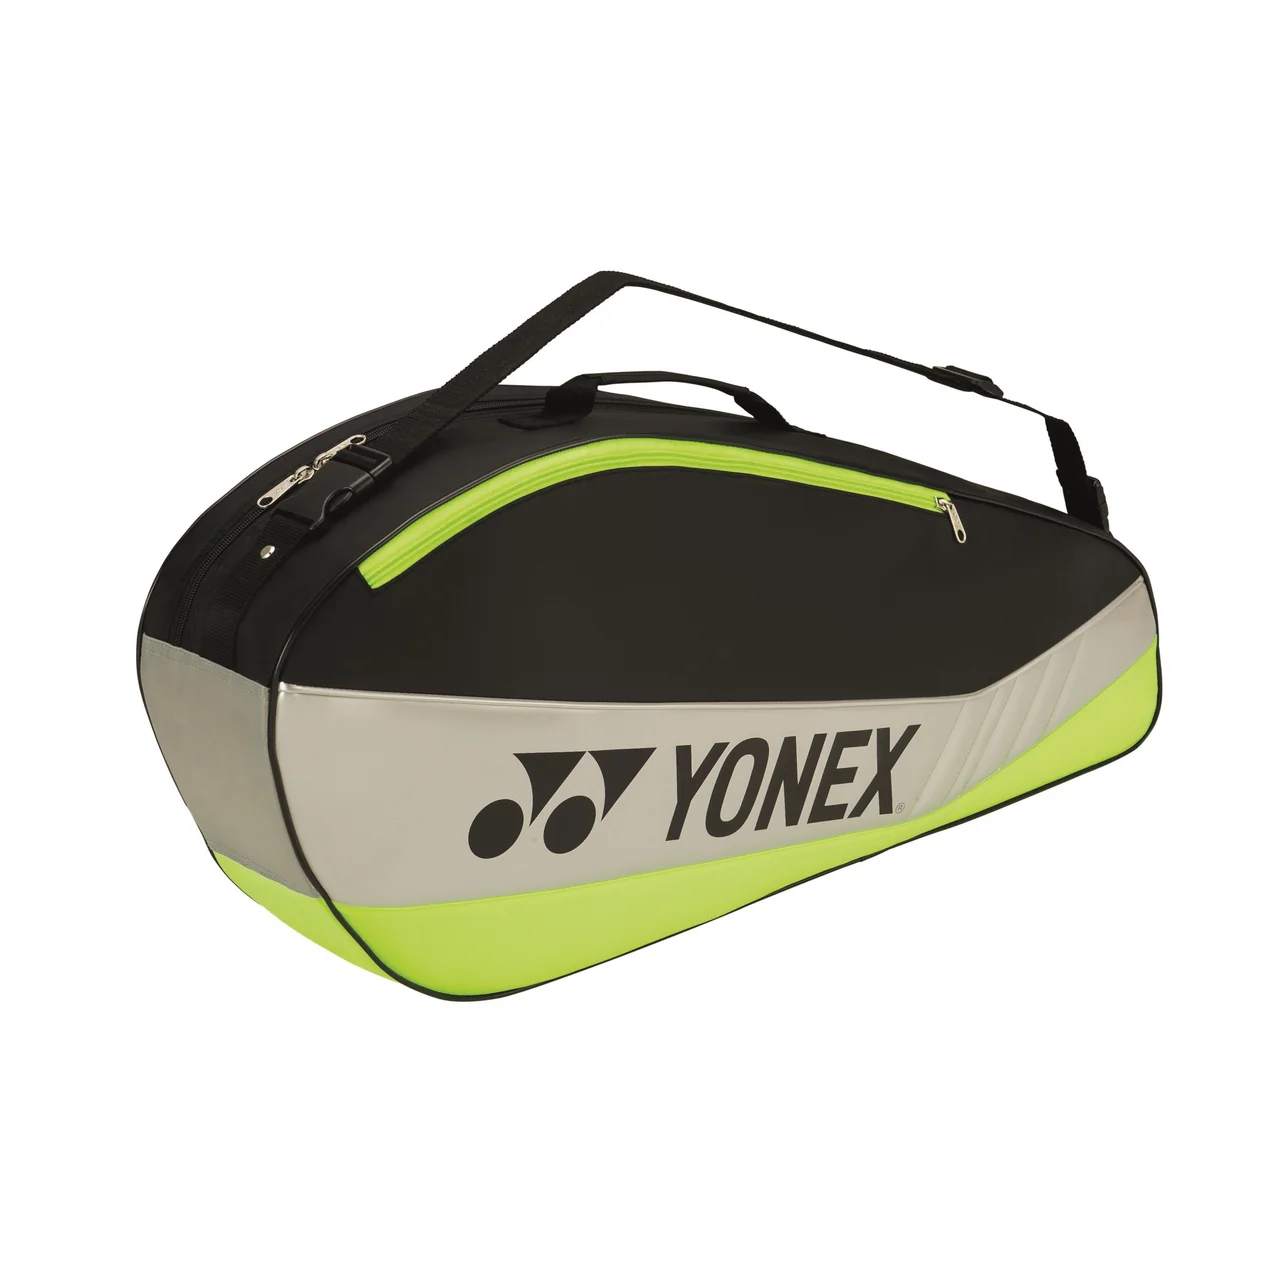 Yonex Club Bag x3 Black/Lime